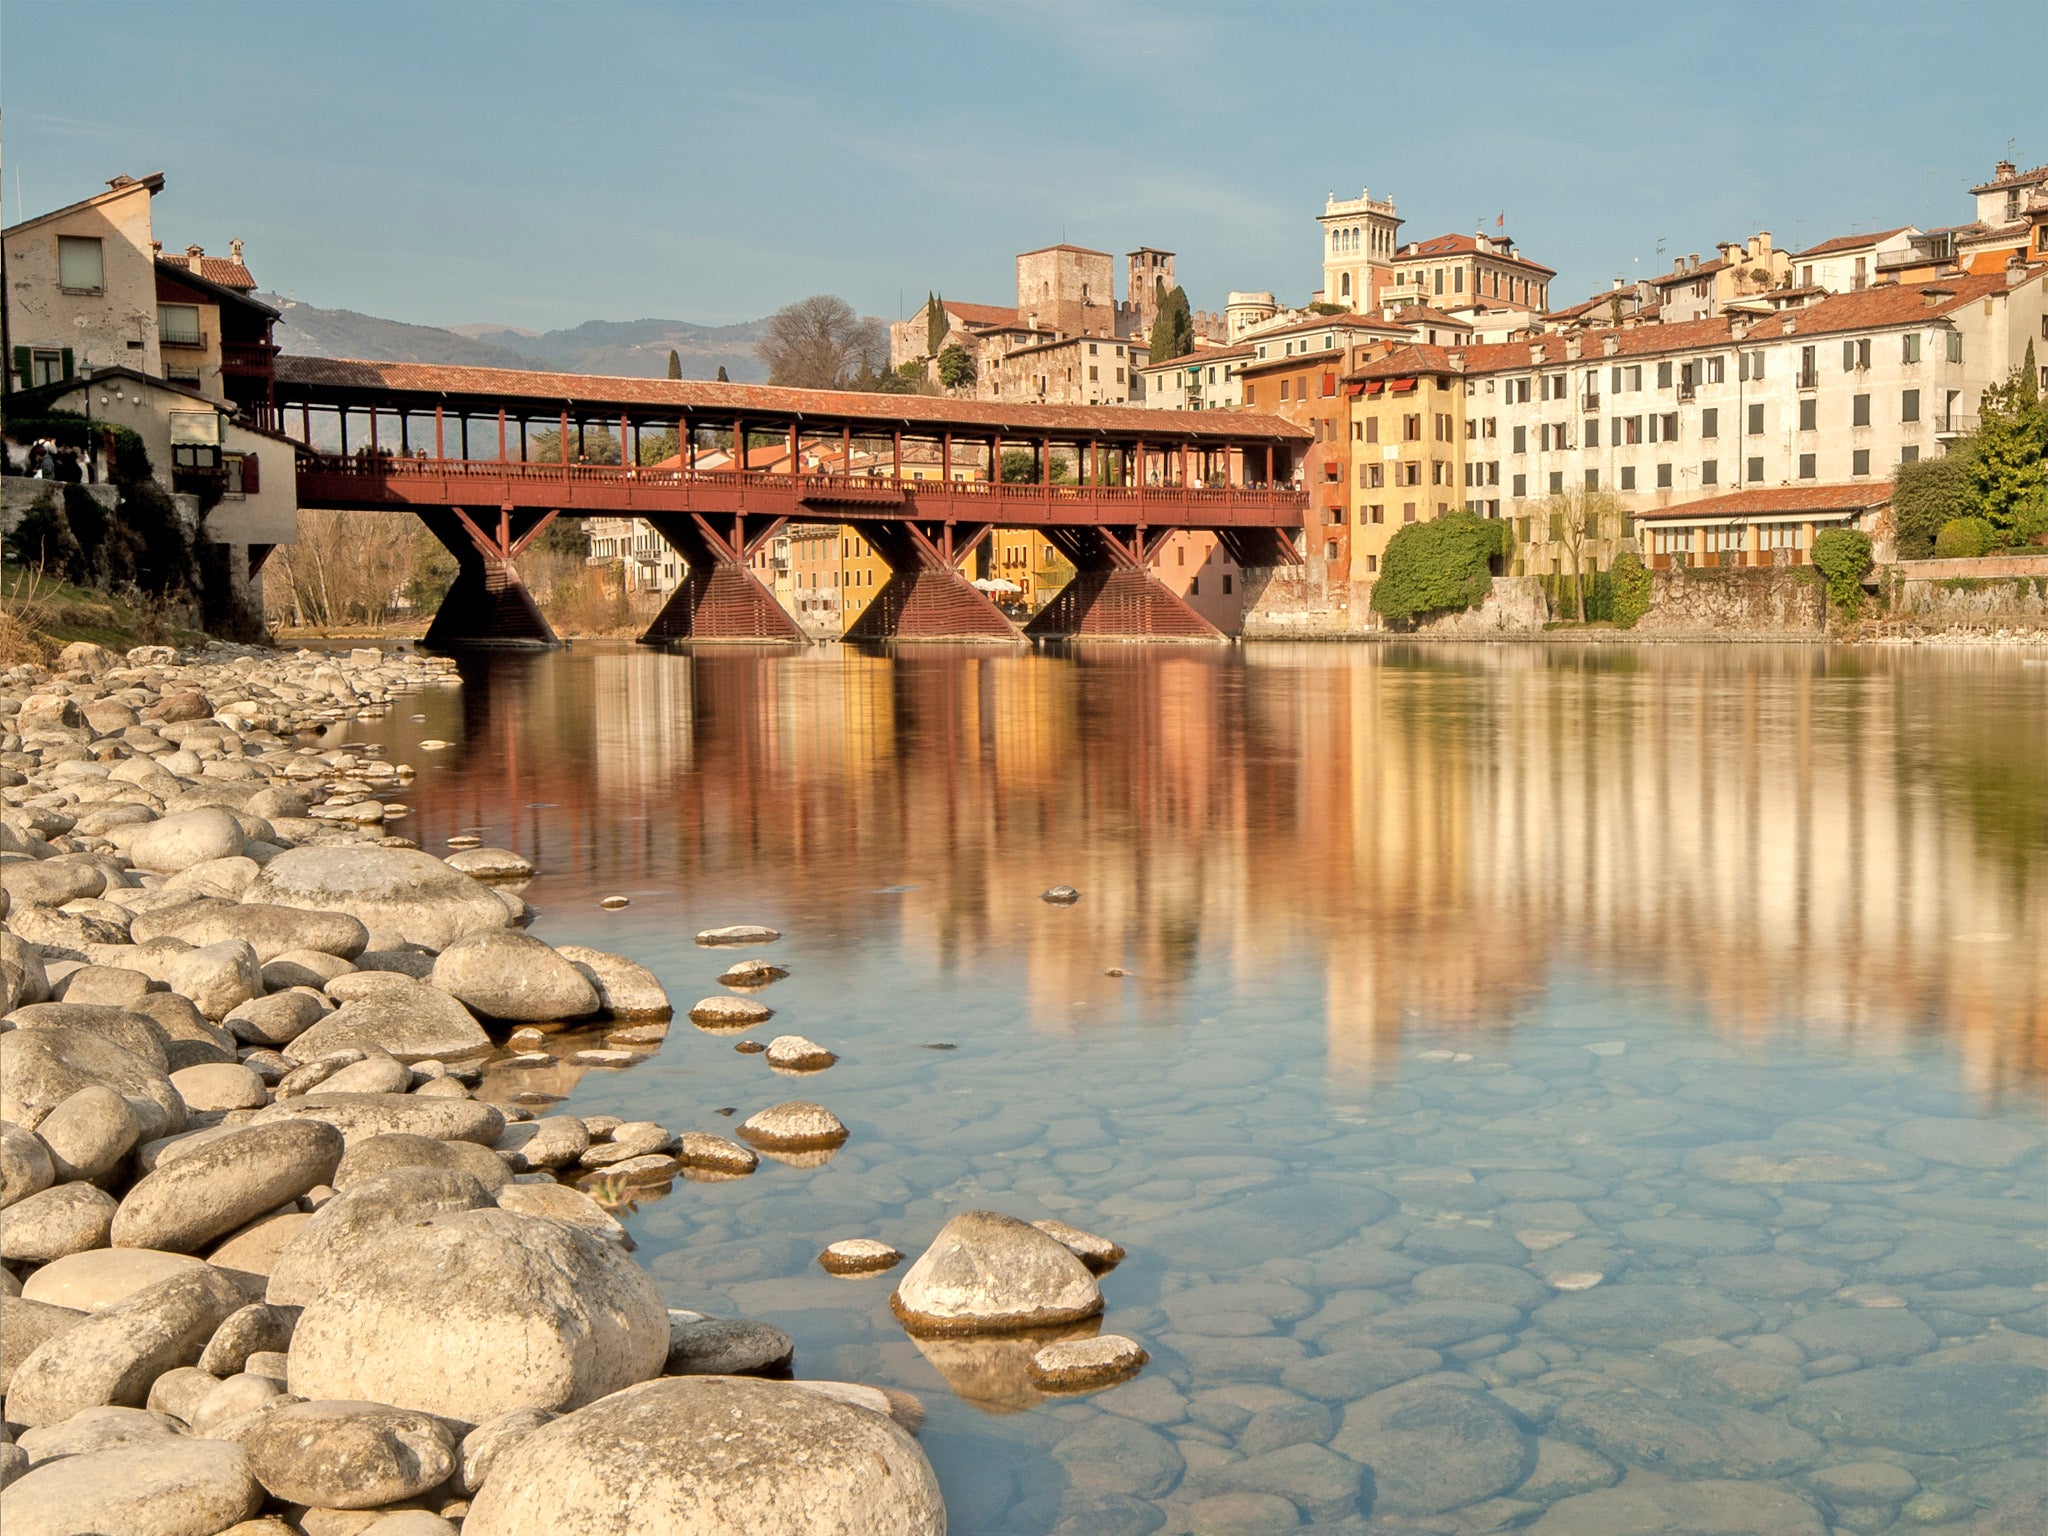 The Ponte Degli Alpini in Bassano del Grappa has stood in its current form since 1569